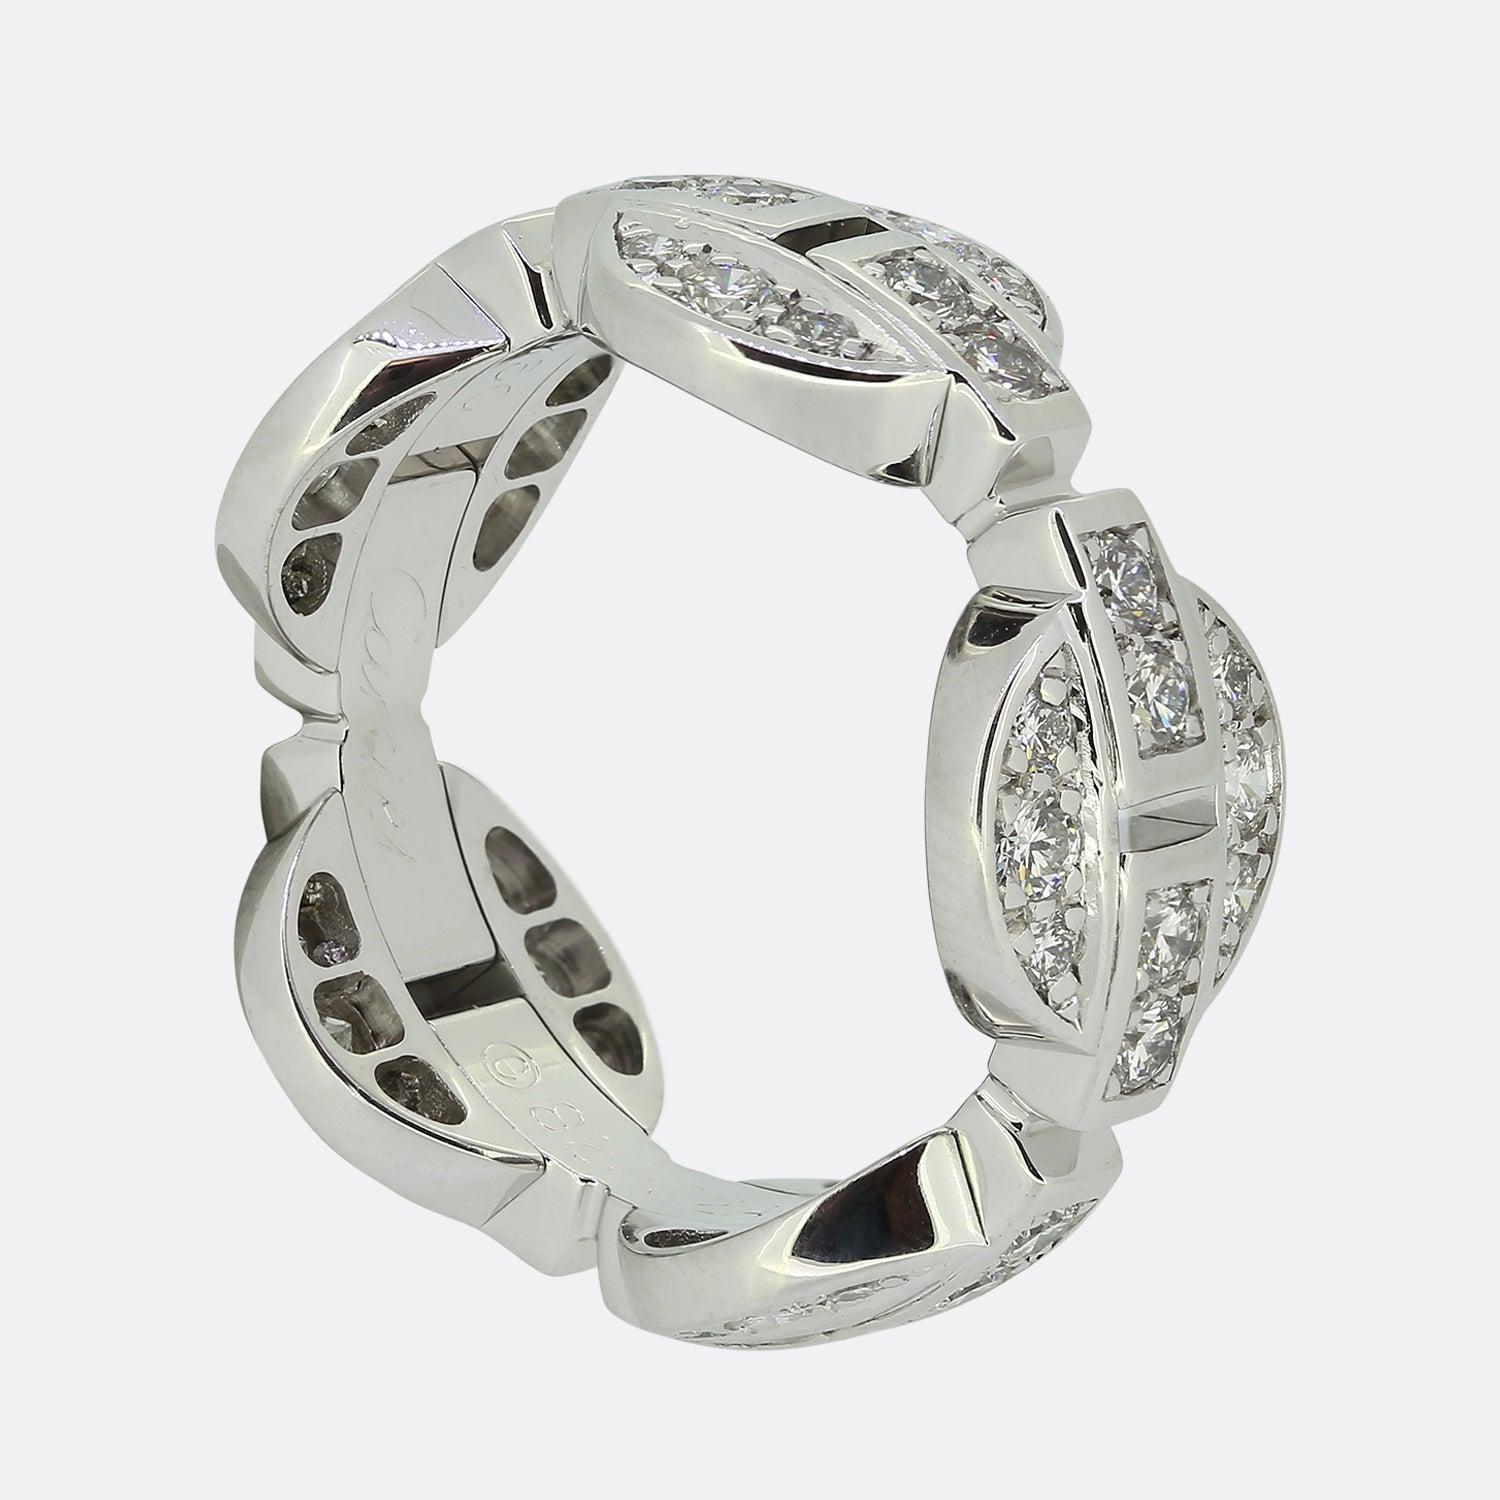 Hier haben wir einen wunderschönen Diamantring aus dem weltbekannten Luxusschmuckhaus Cartier. Dieses besondere Stück ist Teil der Himalia-Kollektion und besteht aus fünf kreisförmigen Motiven, die alle perfekt mit hochwertigen Diamanten eingelegt